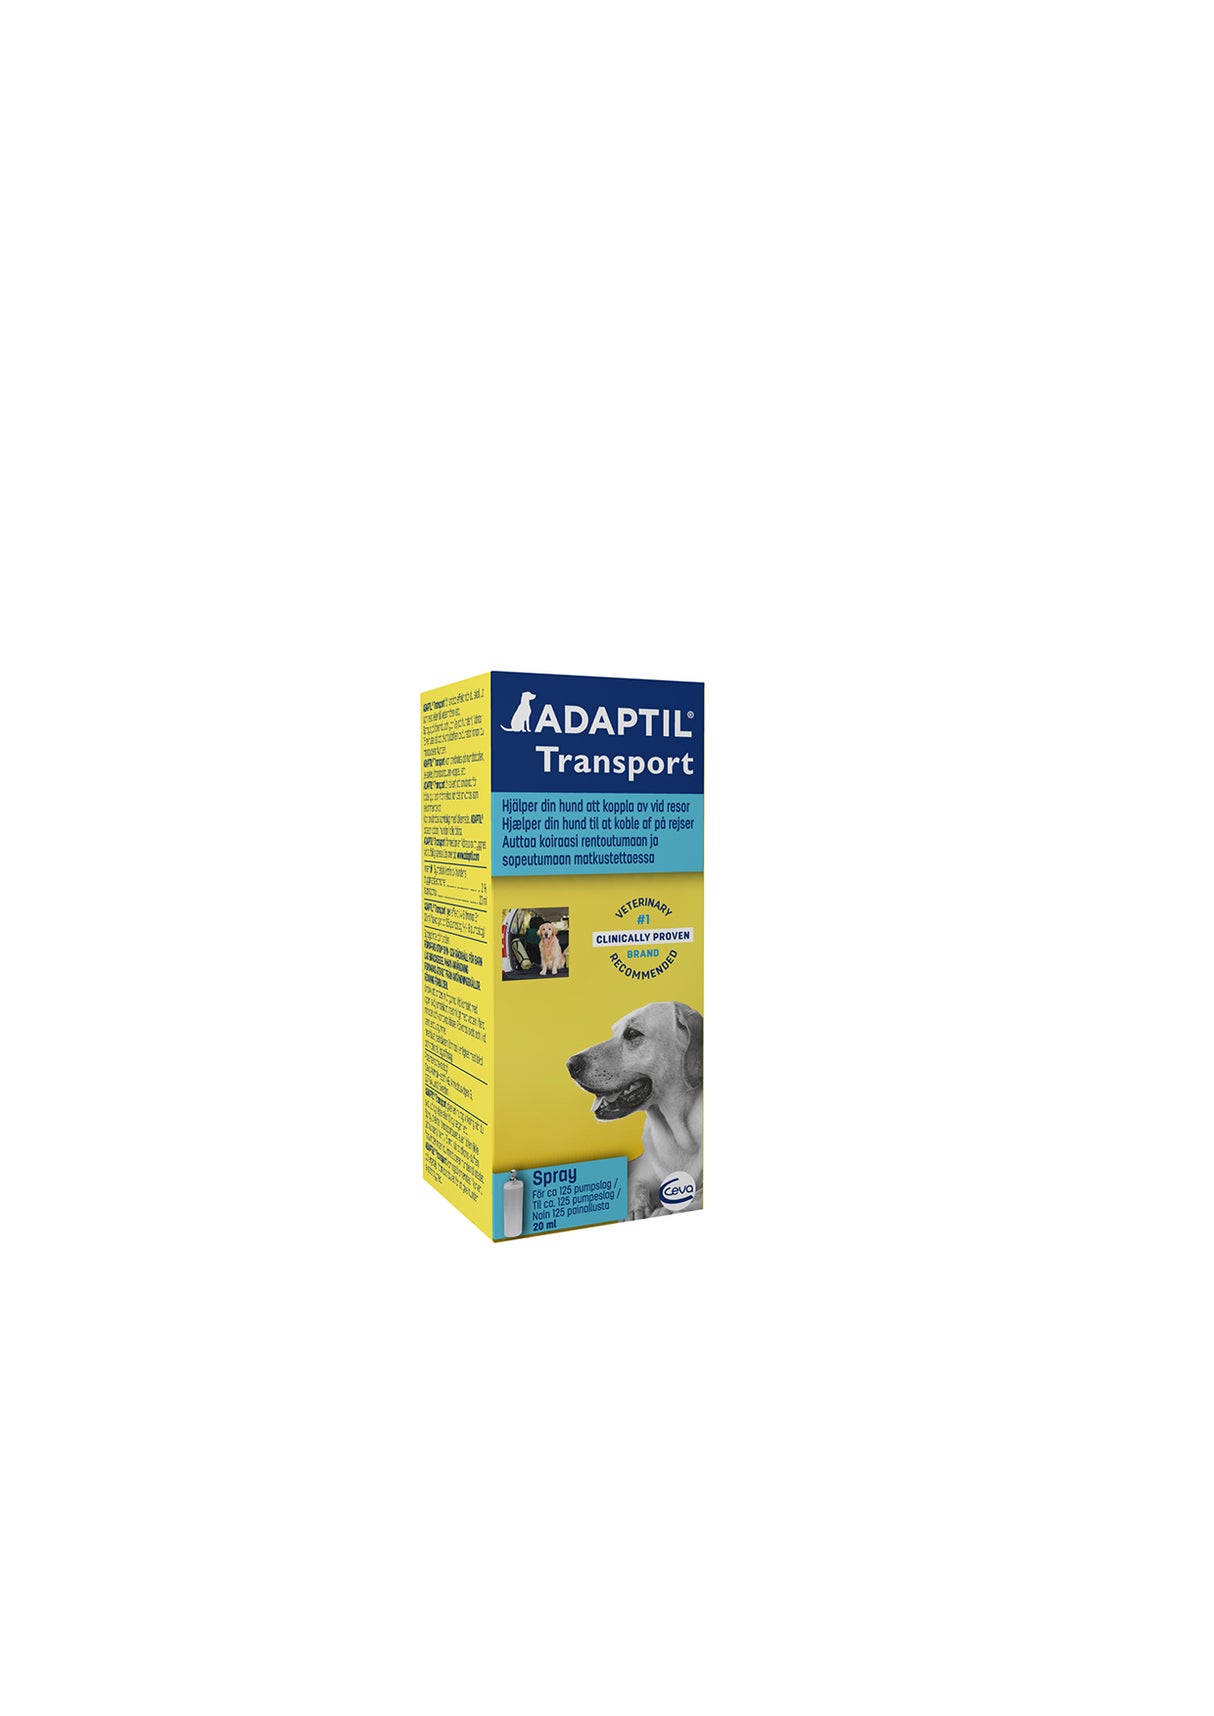 Adaptil Spray - A box with a dog on it, containing Adaptil Spray, kan forebygge frygt eller stressrelaterede reaktioner, Feromoner til hunde/hvalpe for trygge og rolige øjeblikke.